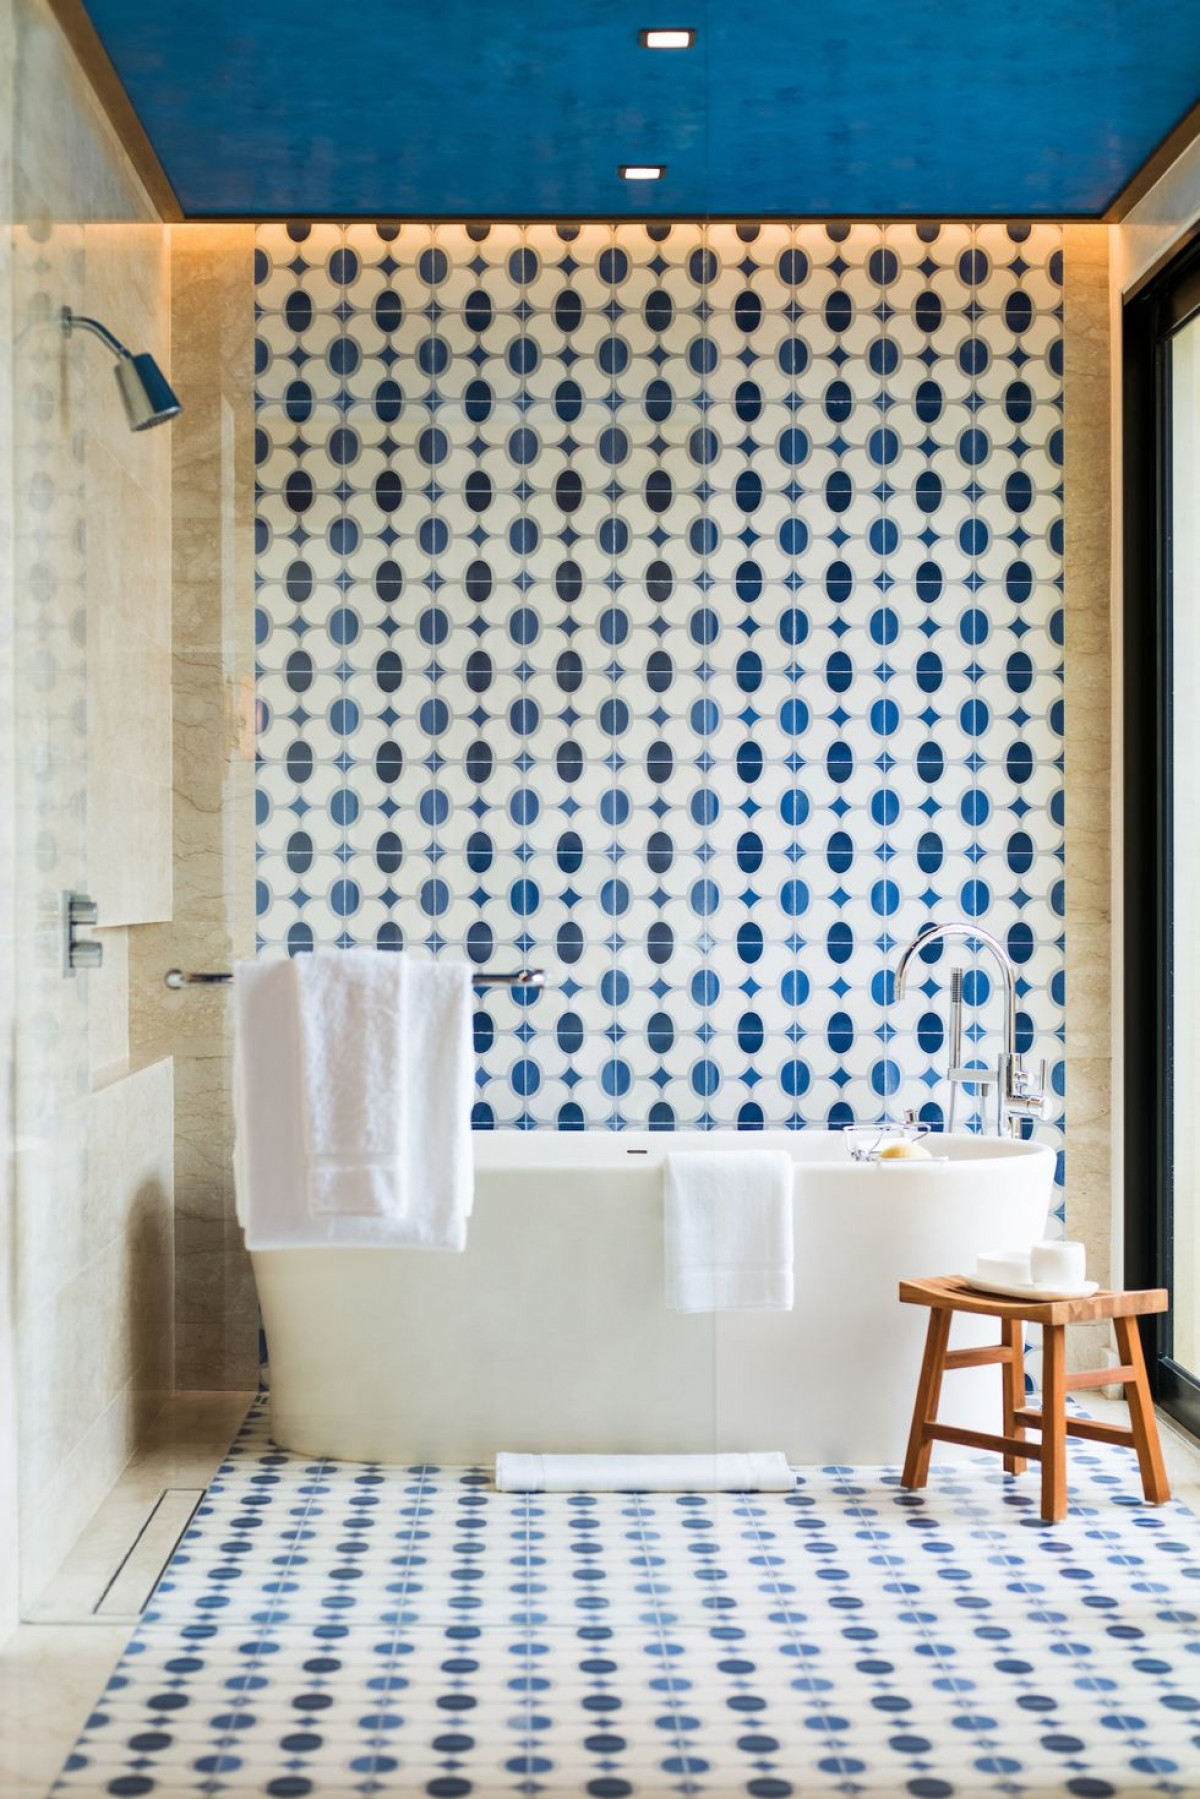 Đưa những yếu tố liên quan đến môi trường vào trong phòng tắm, ví dụ như trang trí trần, tường và nền bằng màu xanh nước biển, sẽ tạo cảm giác thư giãn hơn hẳn.